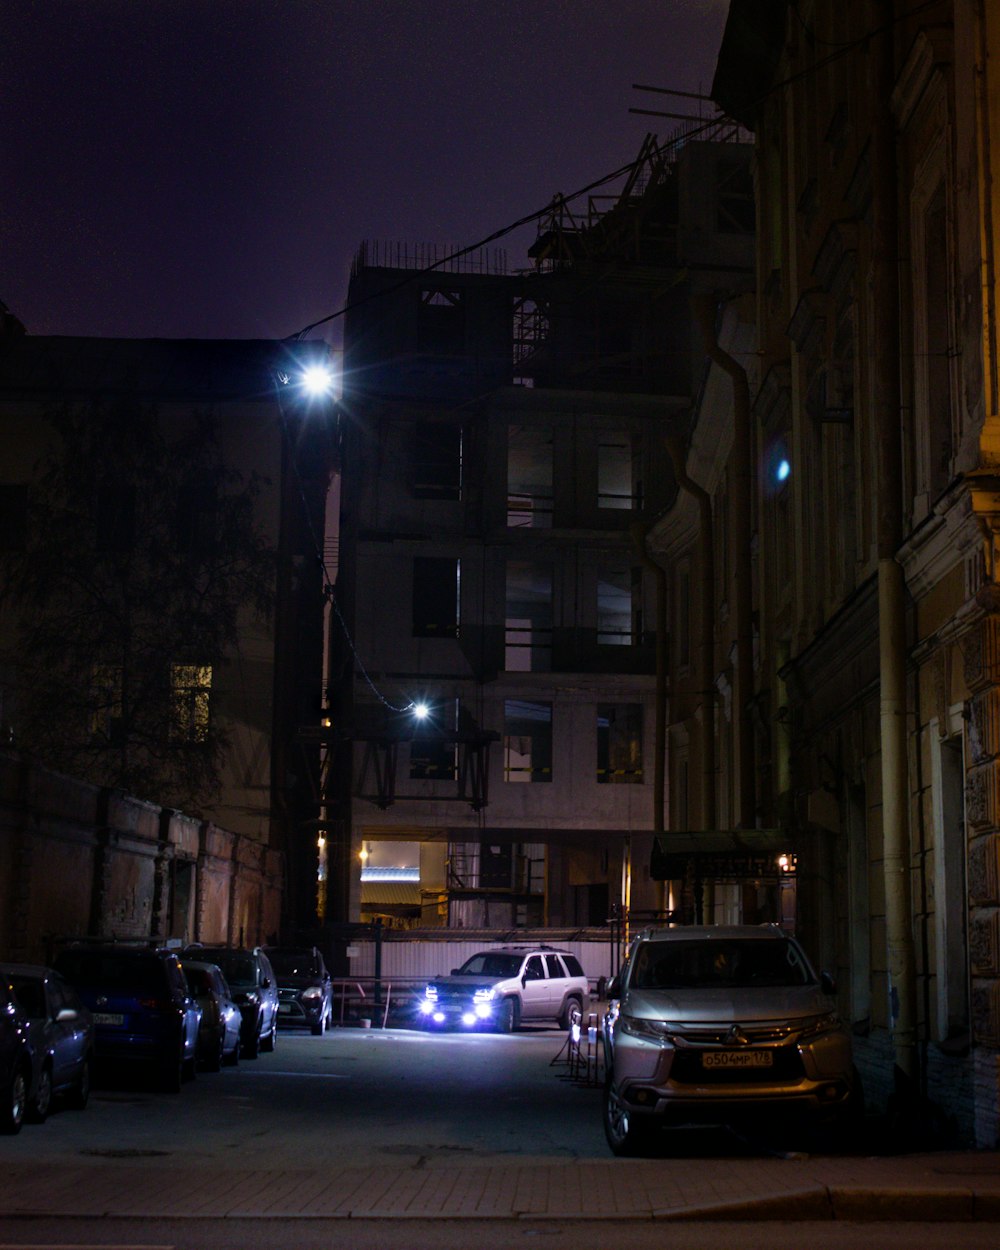 Voitures garées devant l’immeuble pendant la nuit